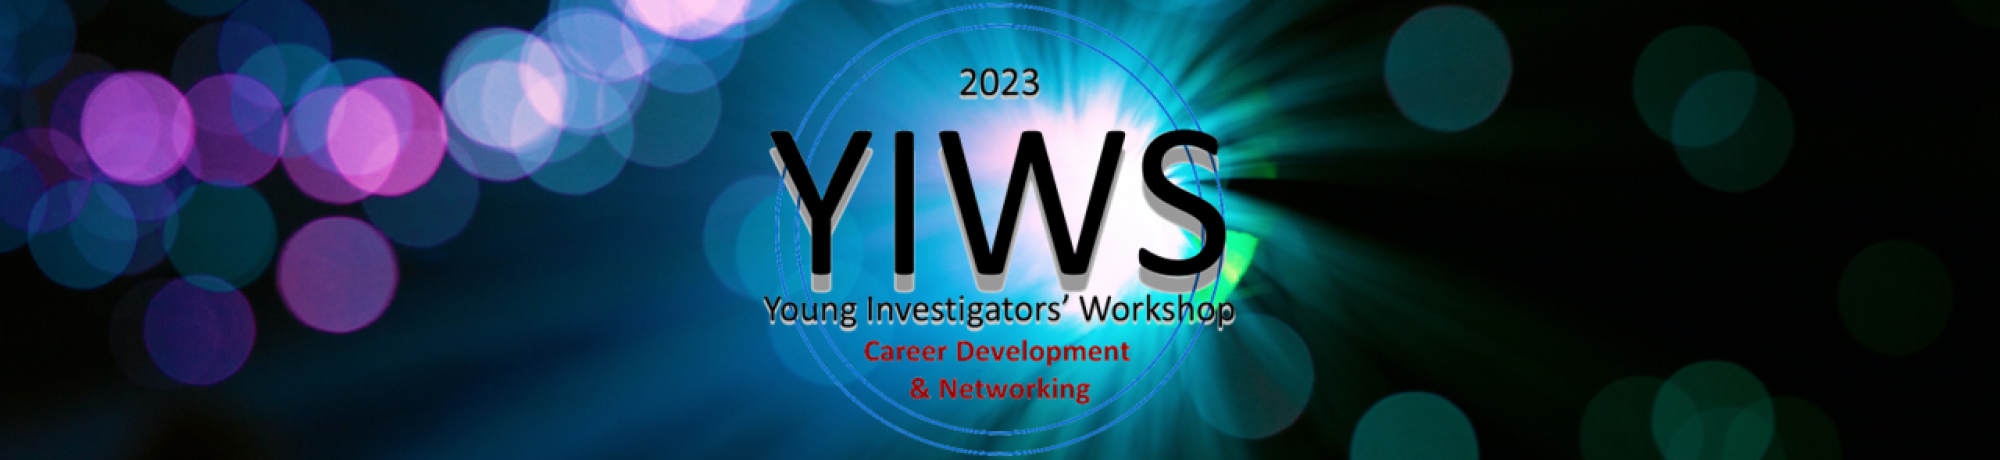 YIWS_2023_background_w_Logo